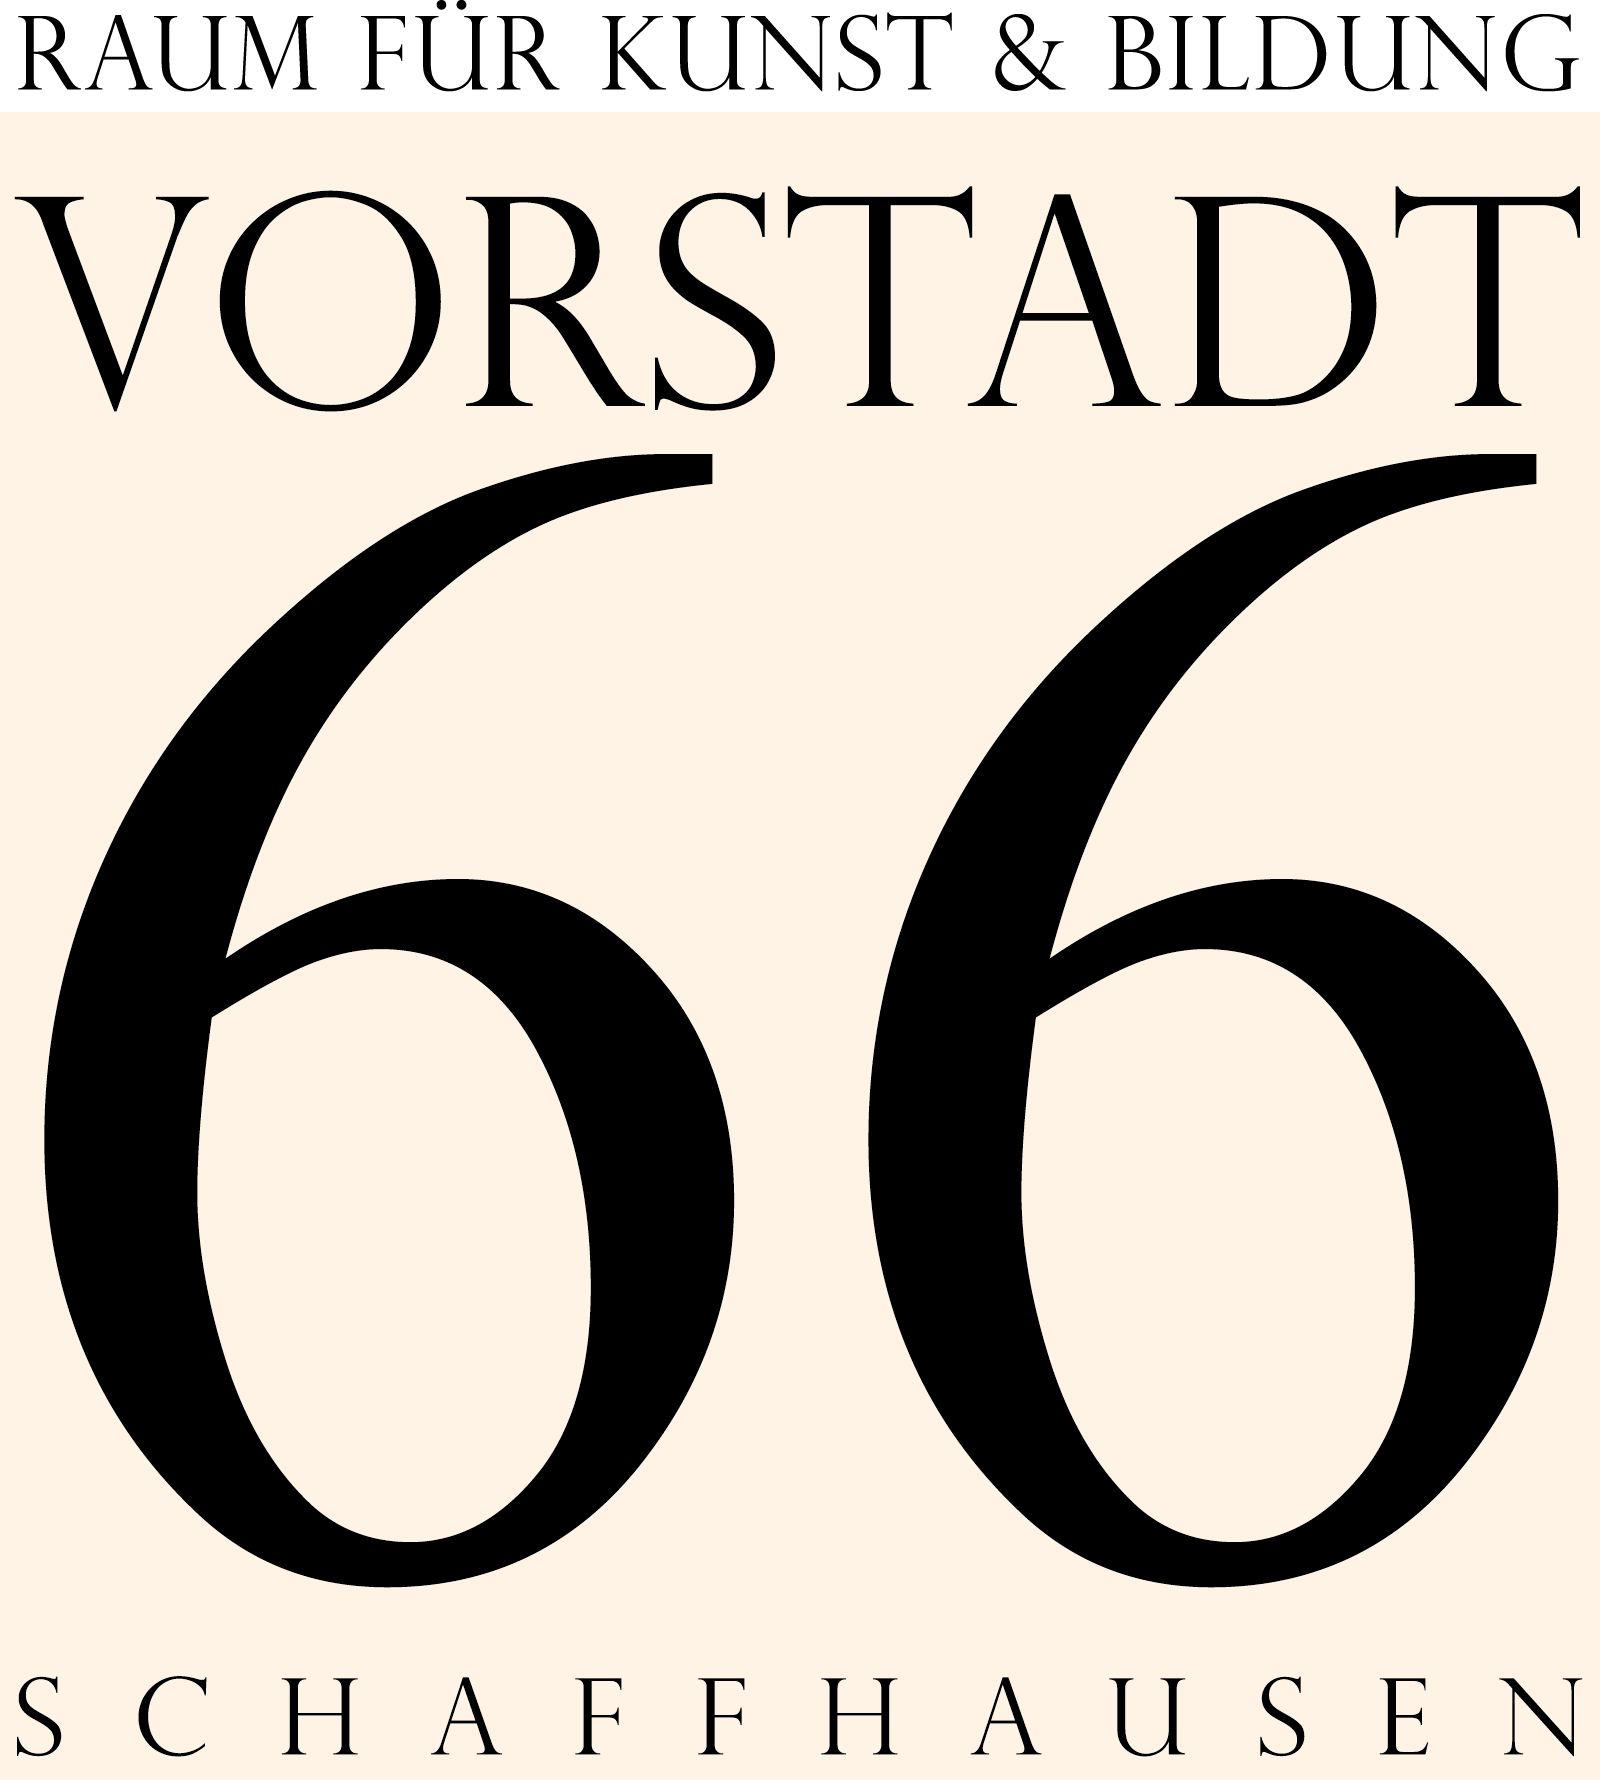 VORSTADT66 SCHAFFHAUSEN